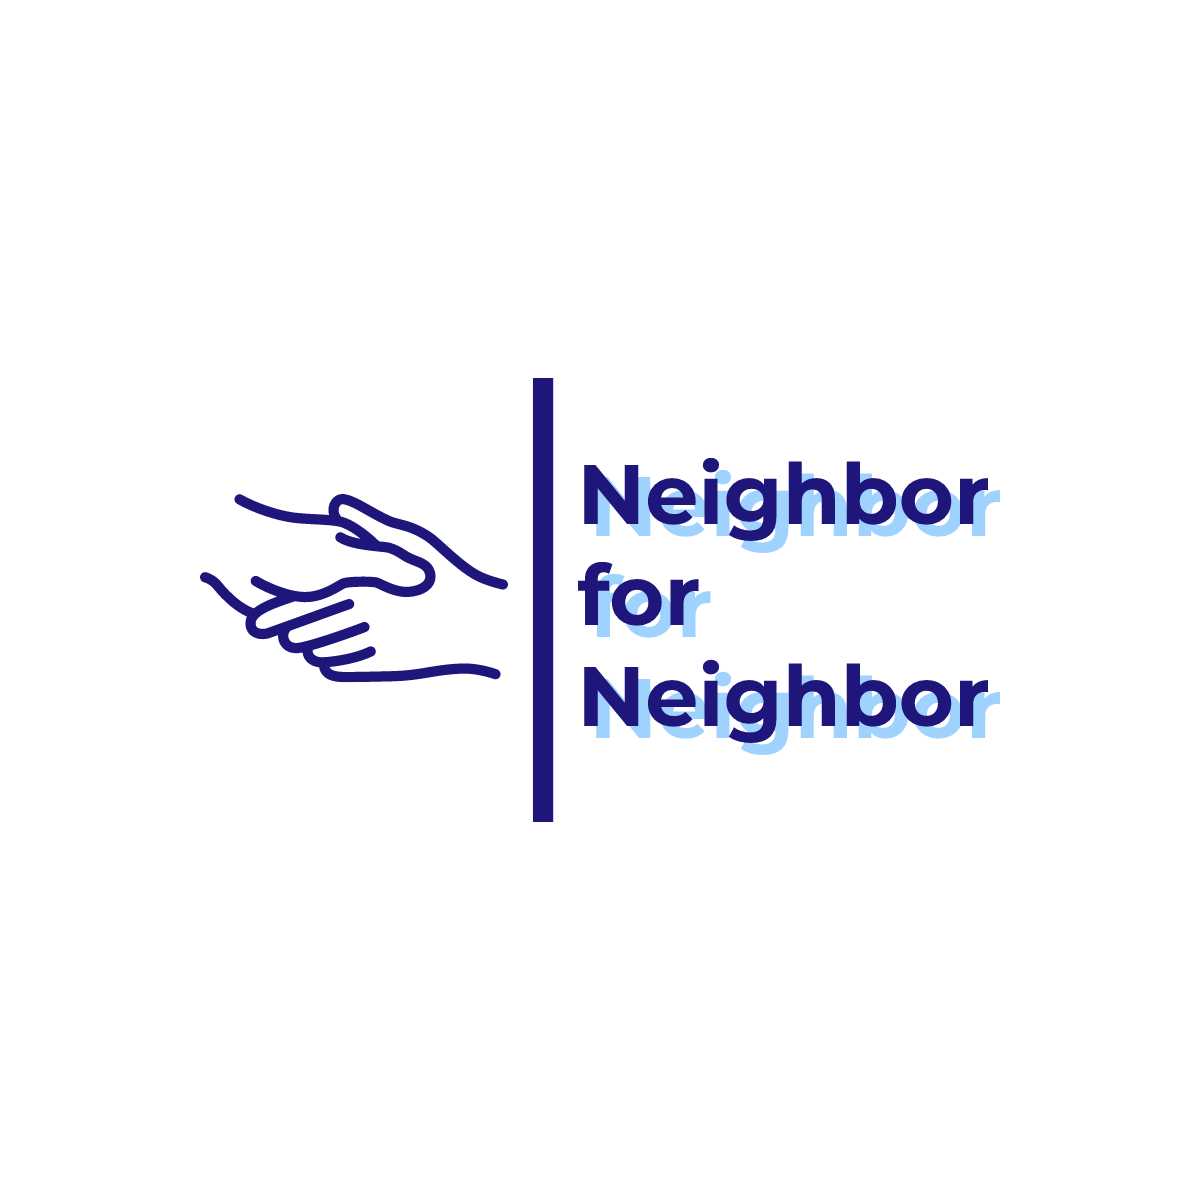 Neighbor for Neighbor